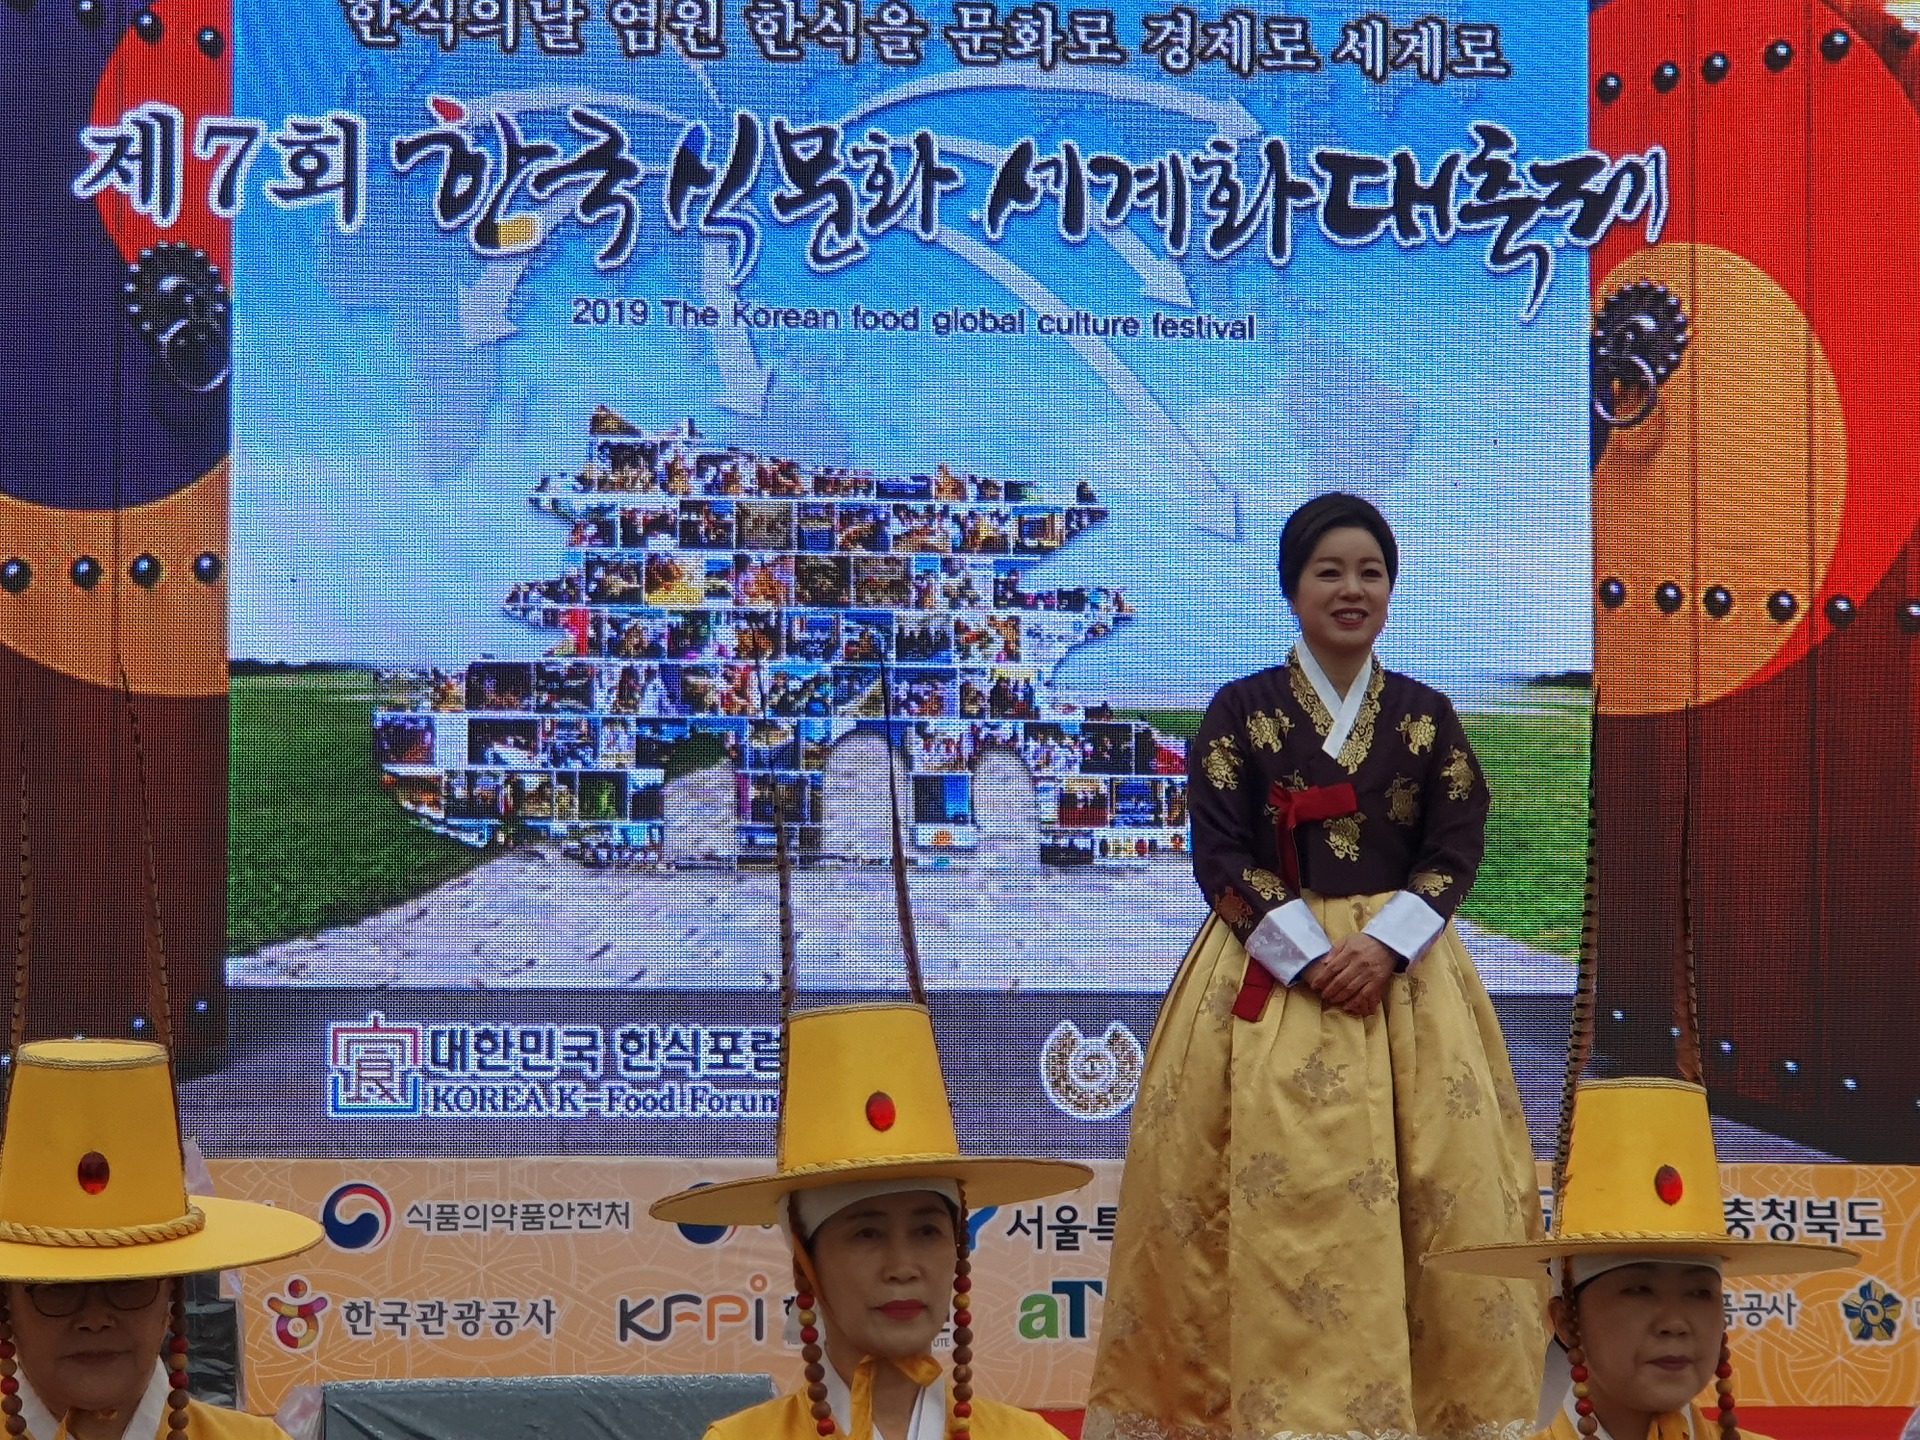  국제엔젤봉시단, 제7회 한국식문화세계화대축제 개막식에 봉사활동 펼쳐